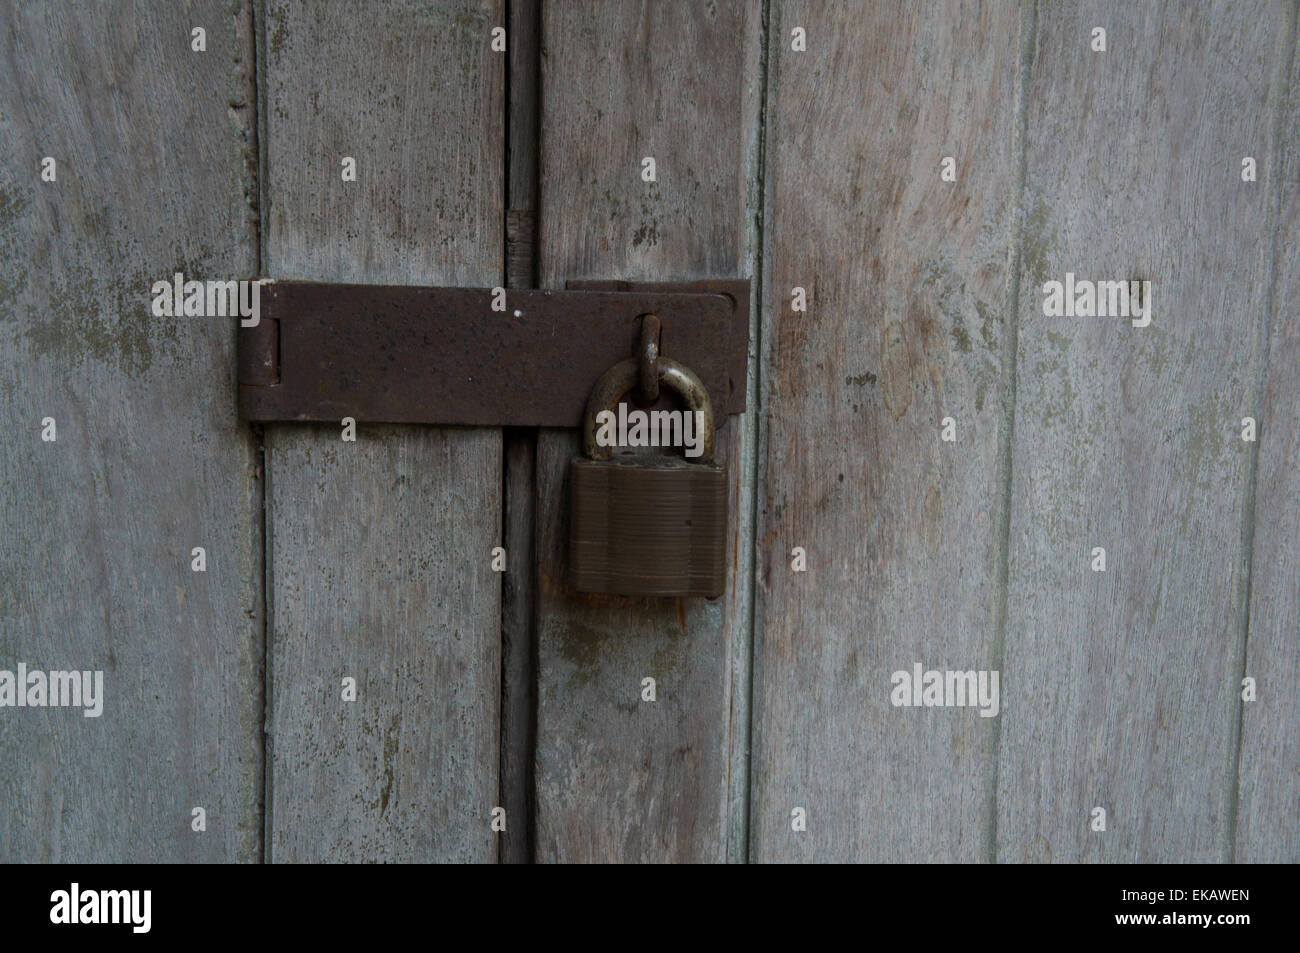 lock padlock door house home close wooden door Stock Photo